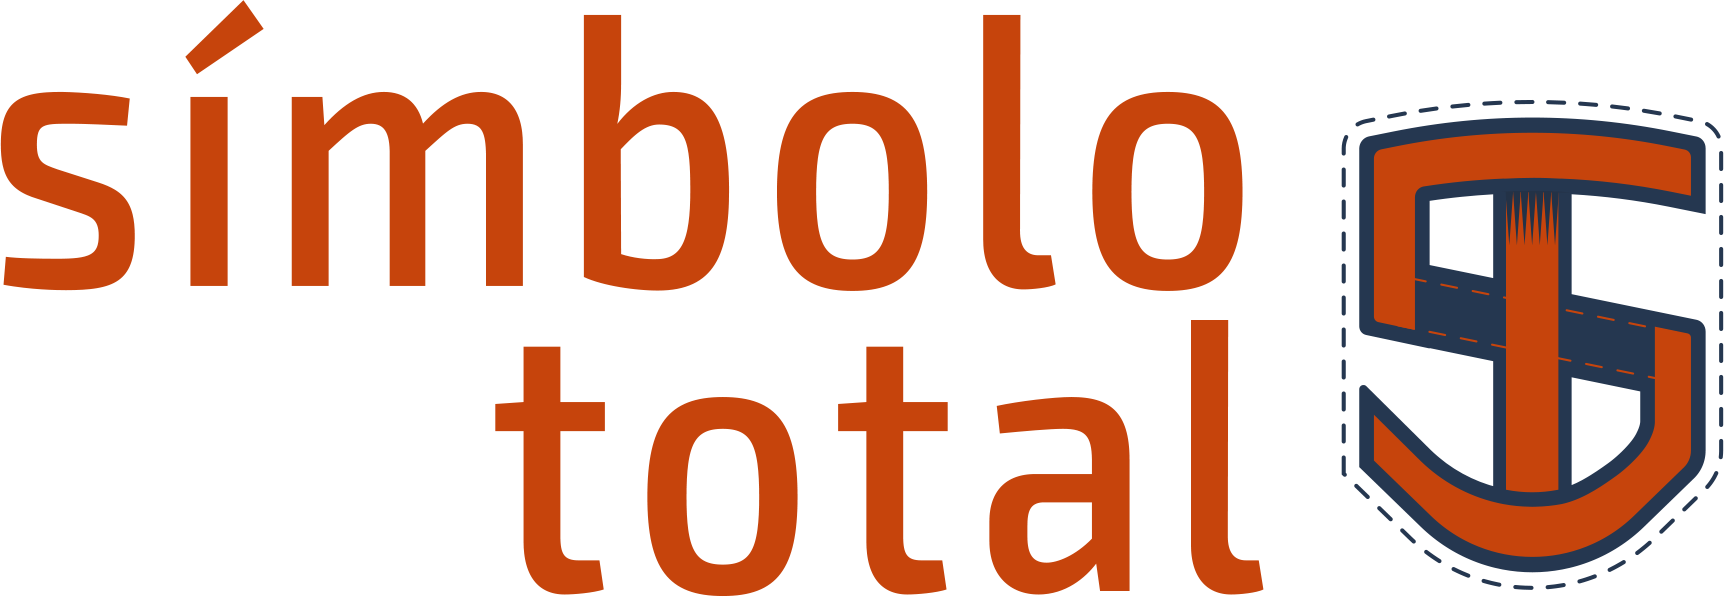 Símbolo Total Logotipo